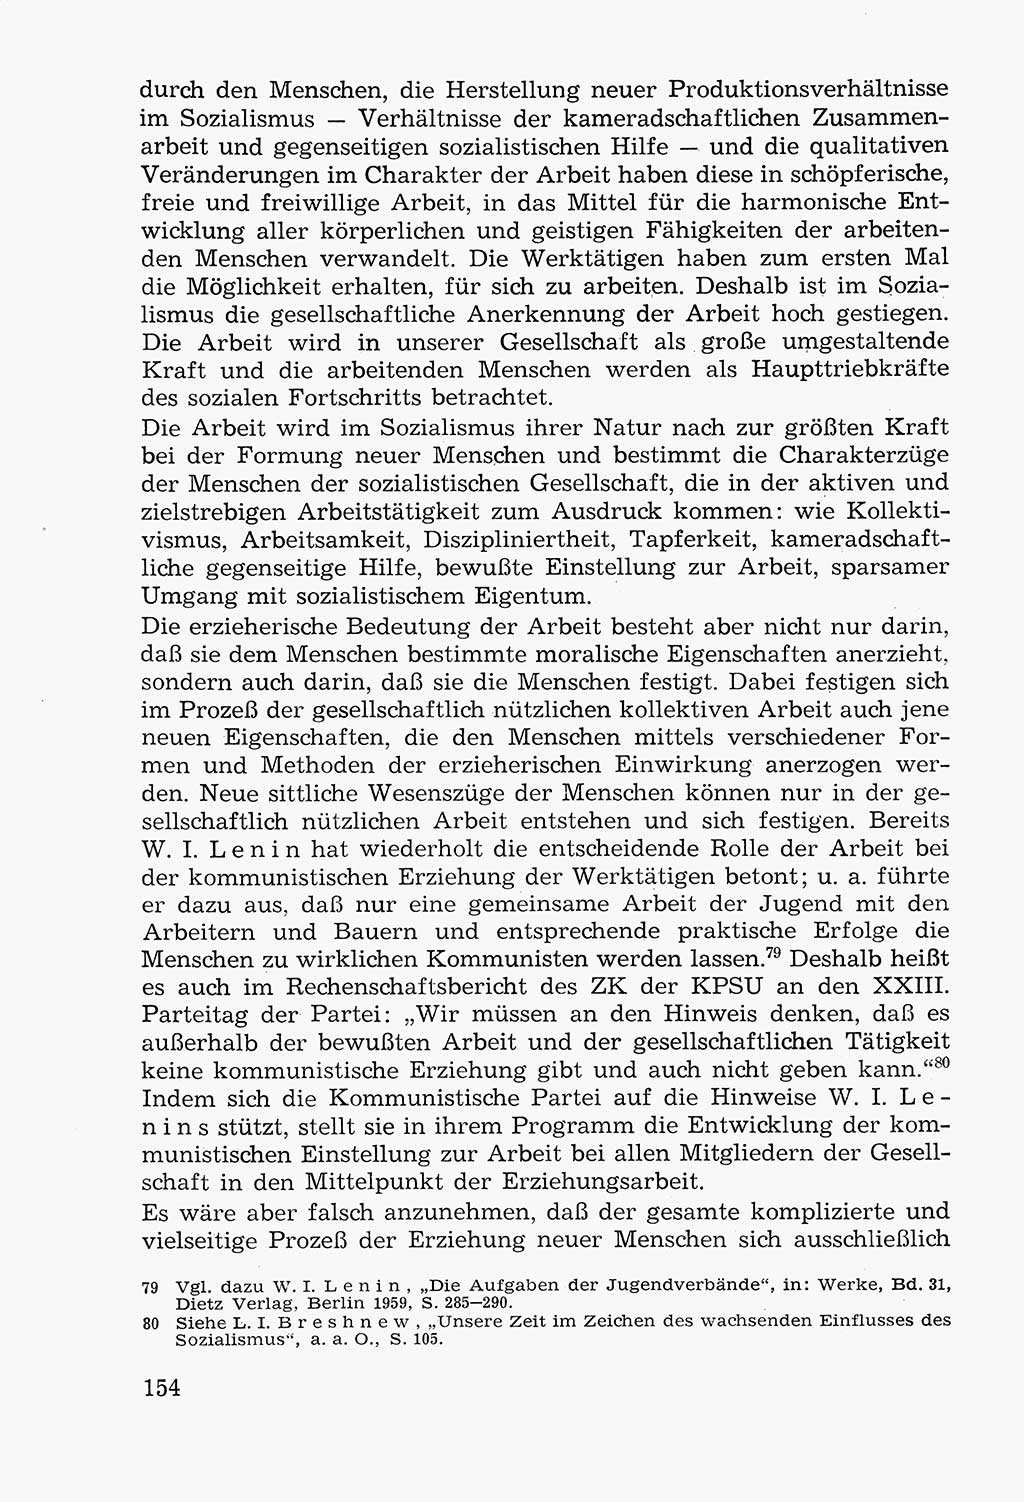 Lehrbuch der Strafvollzugspädagogik [Deutsche Demokratische Republik (DDR)] 1969, Seite 154 (Lb. SV-Pd. DDR 1969, S. 154)